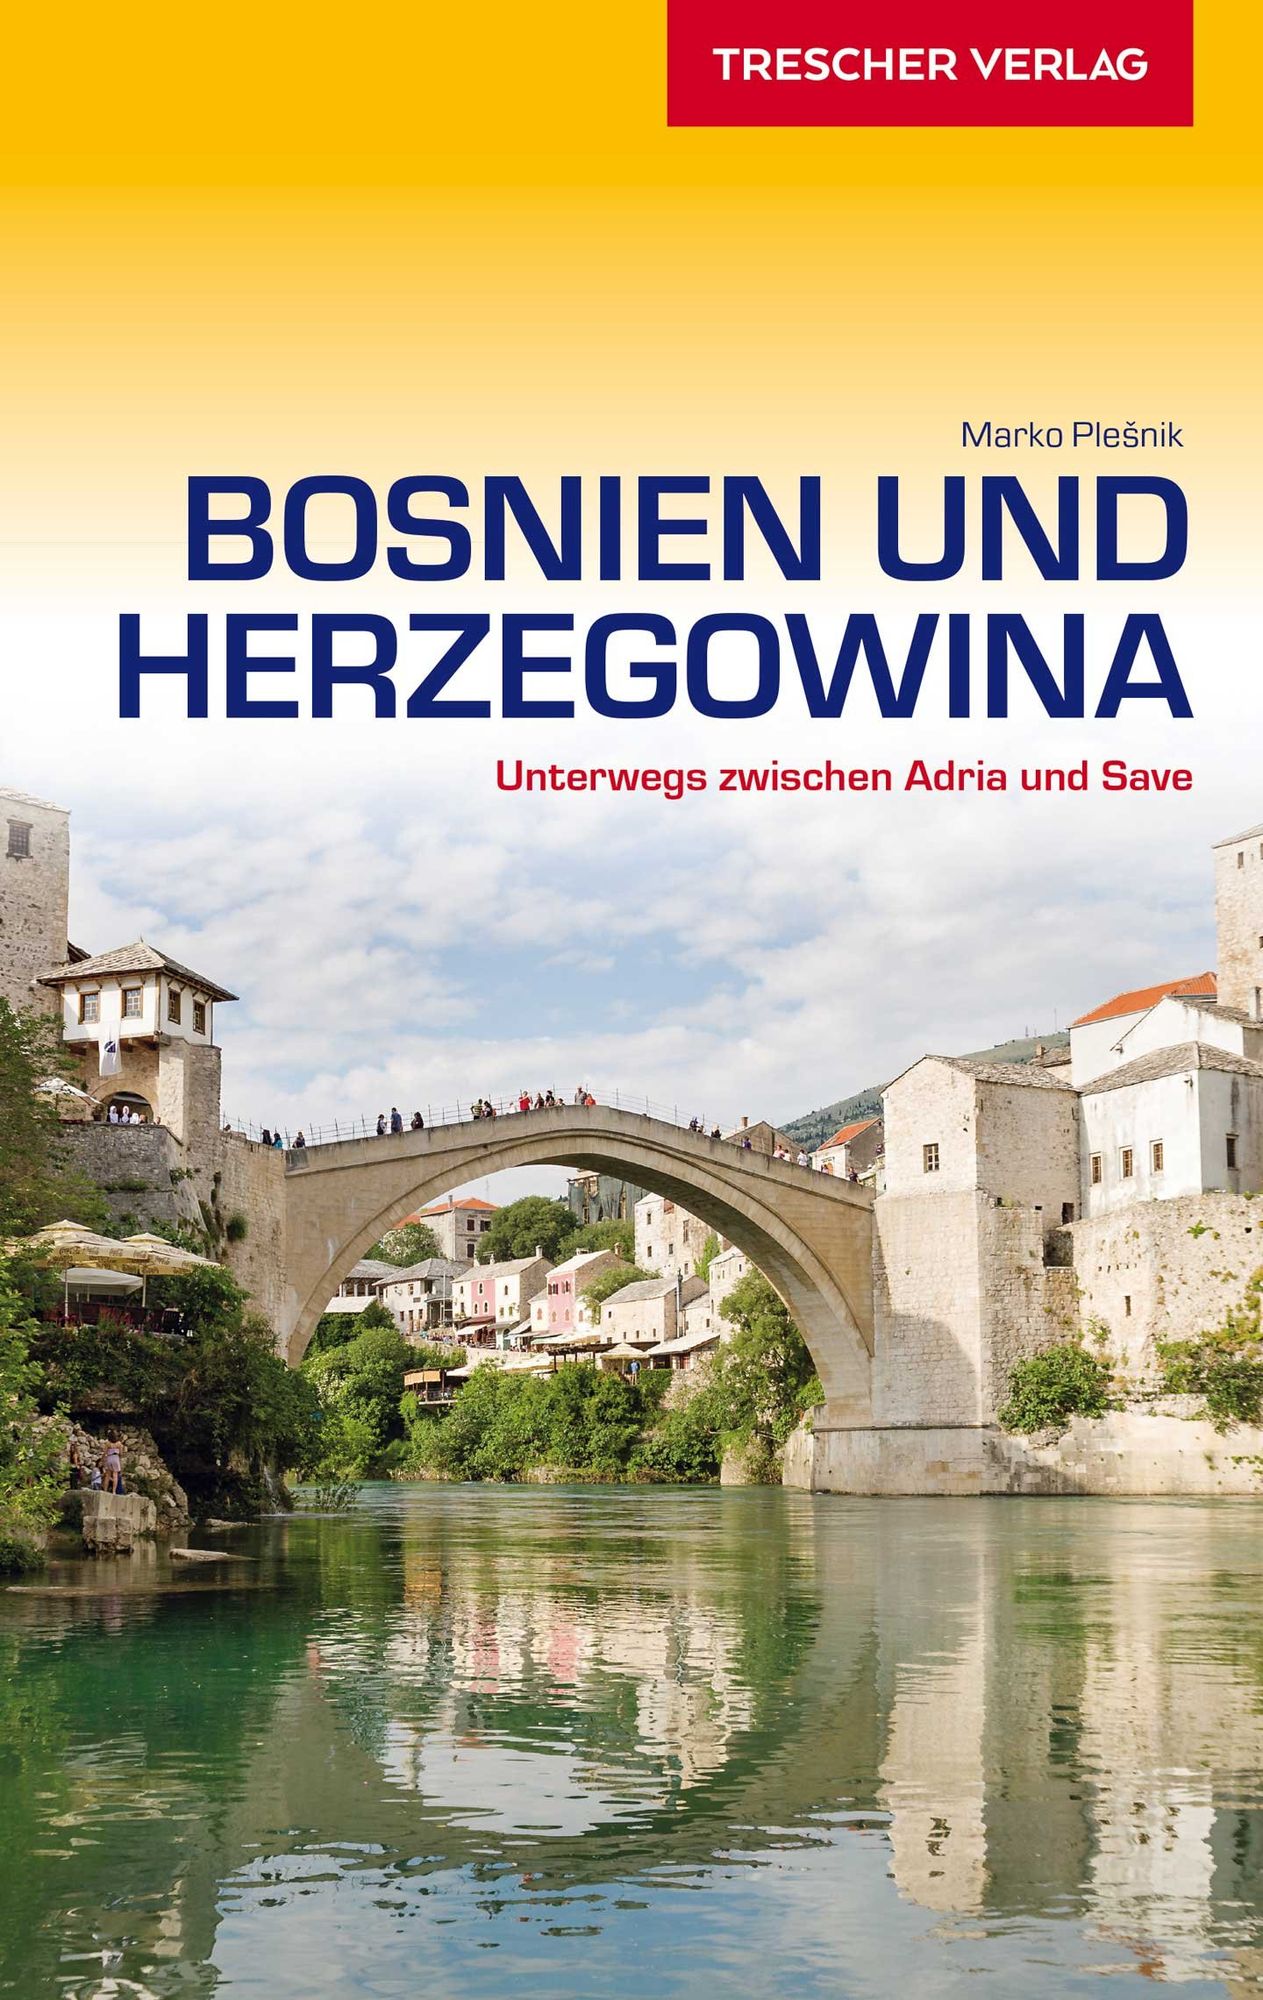 TRESCHER Reiseführer Bosnien und Herzegowina' von 'Marko Plesnik' - Buch -  '978-3-89794-489-3